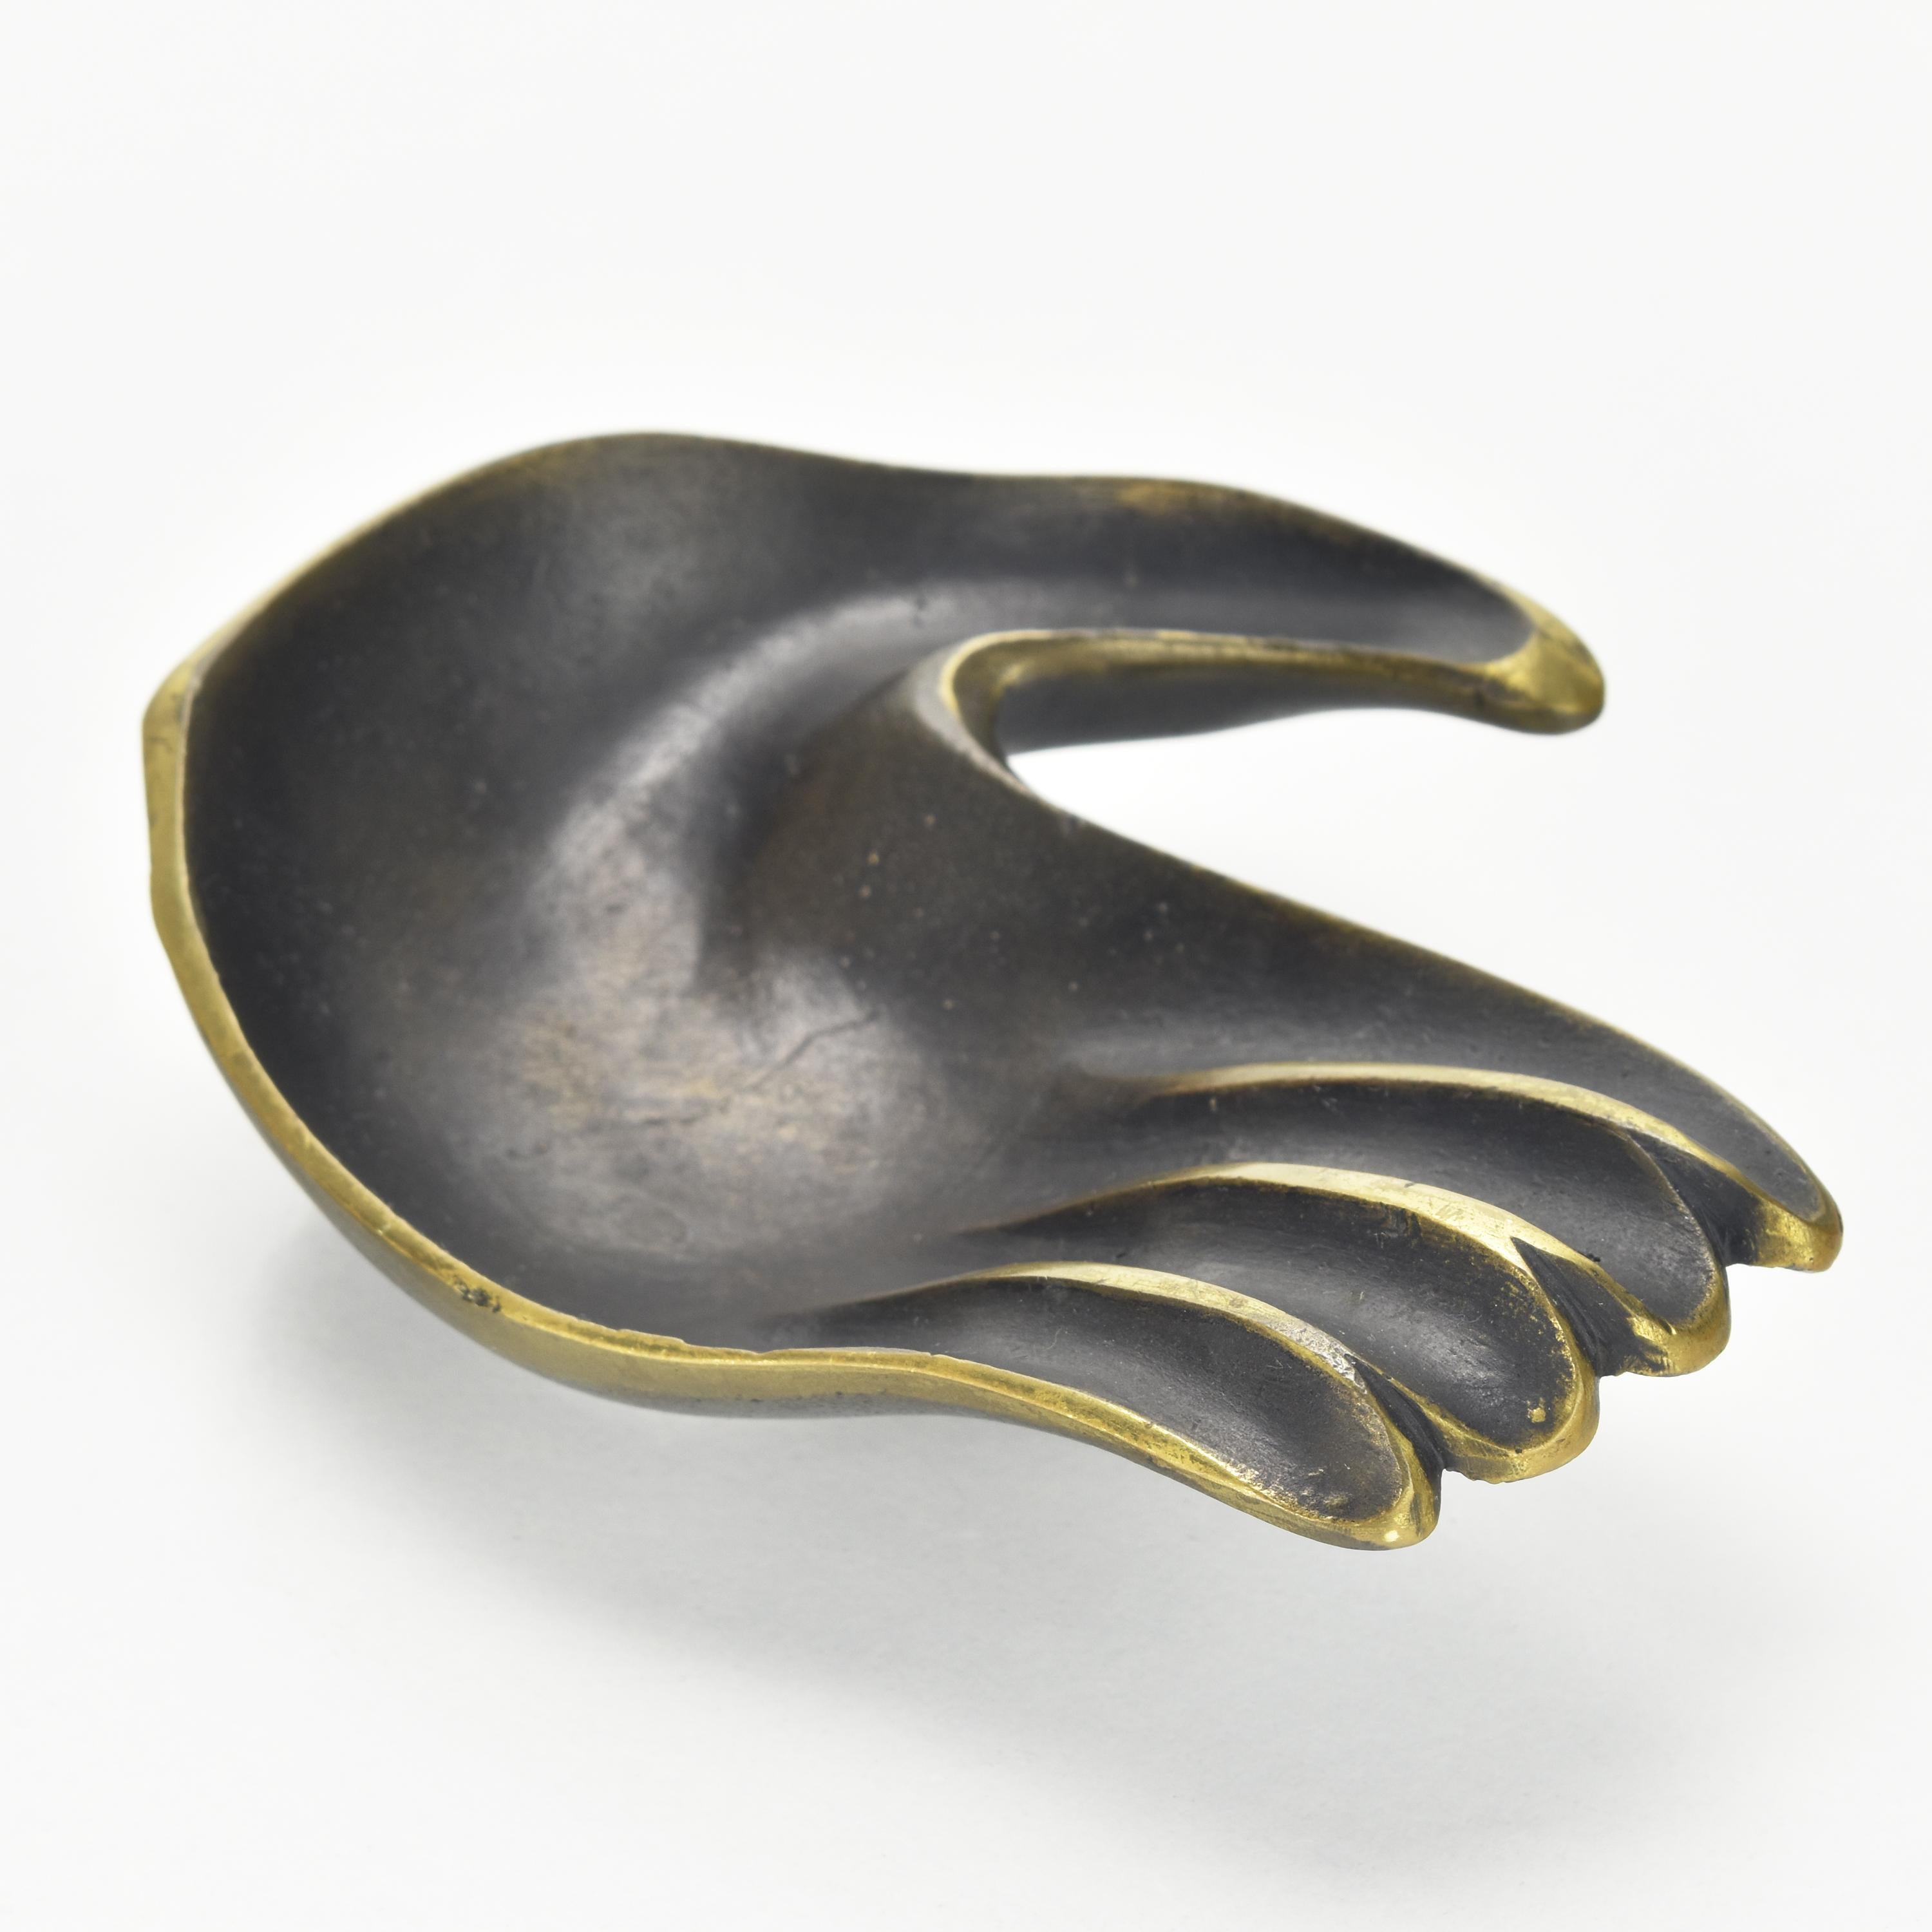 Mid-20th Century Walter Bosse Hand Sculpture Figurative Ashtray Pin Dish Vide Poche c. 1950s For Sale